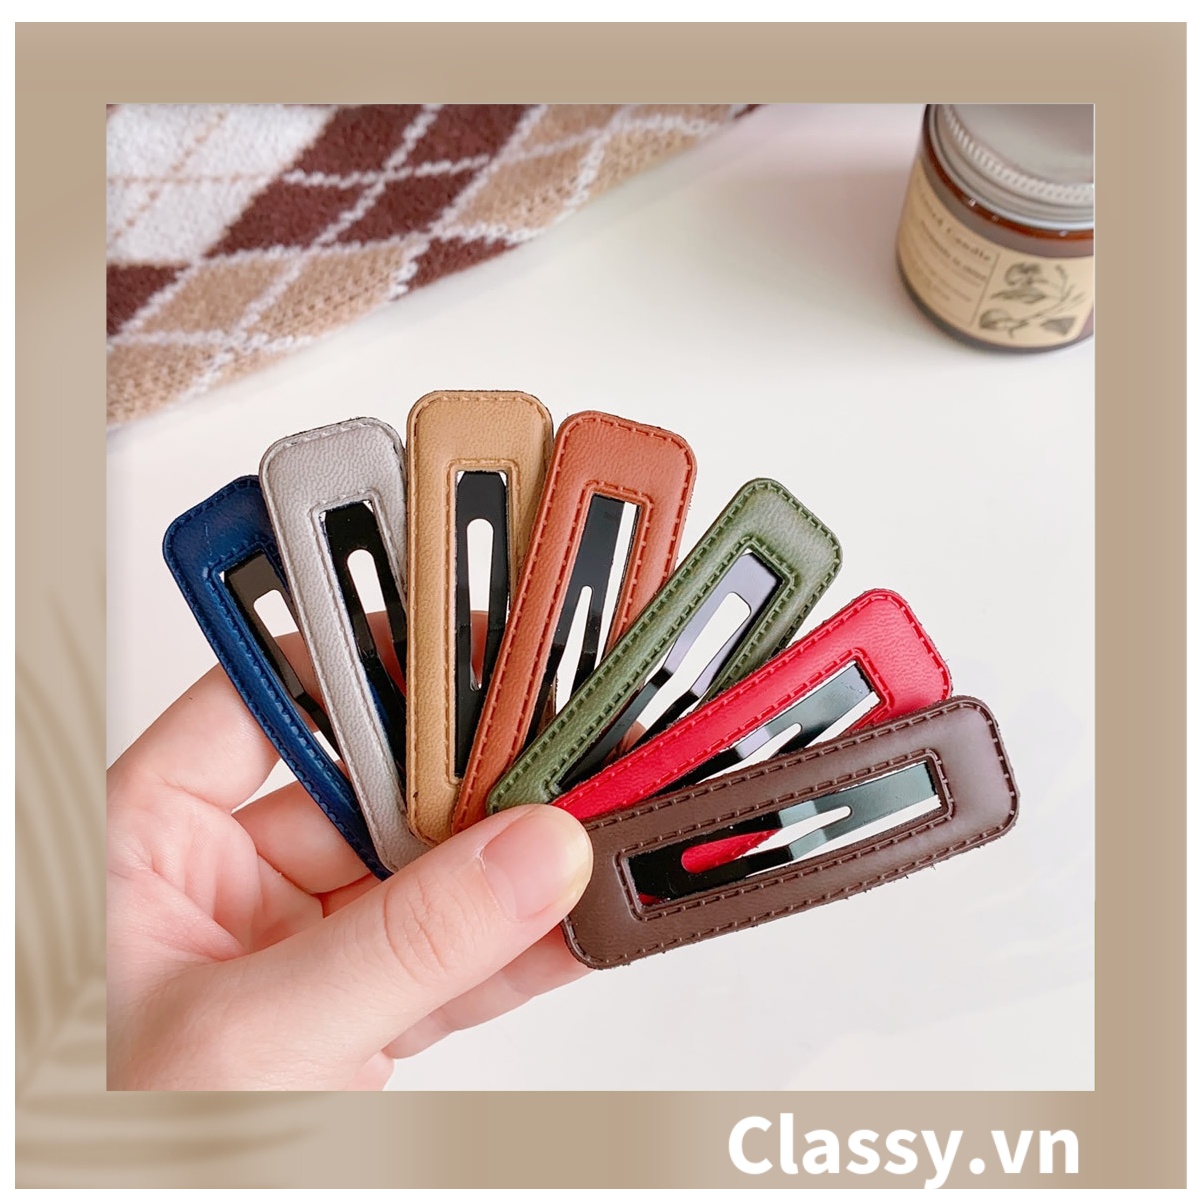 Kẹp Classy tóc  dạng clip đen bọc da trơn màu phong cách tối giản theo phong cách Hàn Quốc PK782